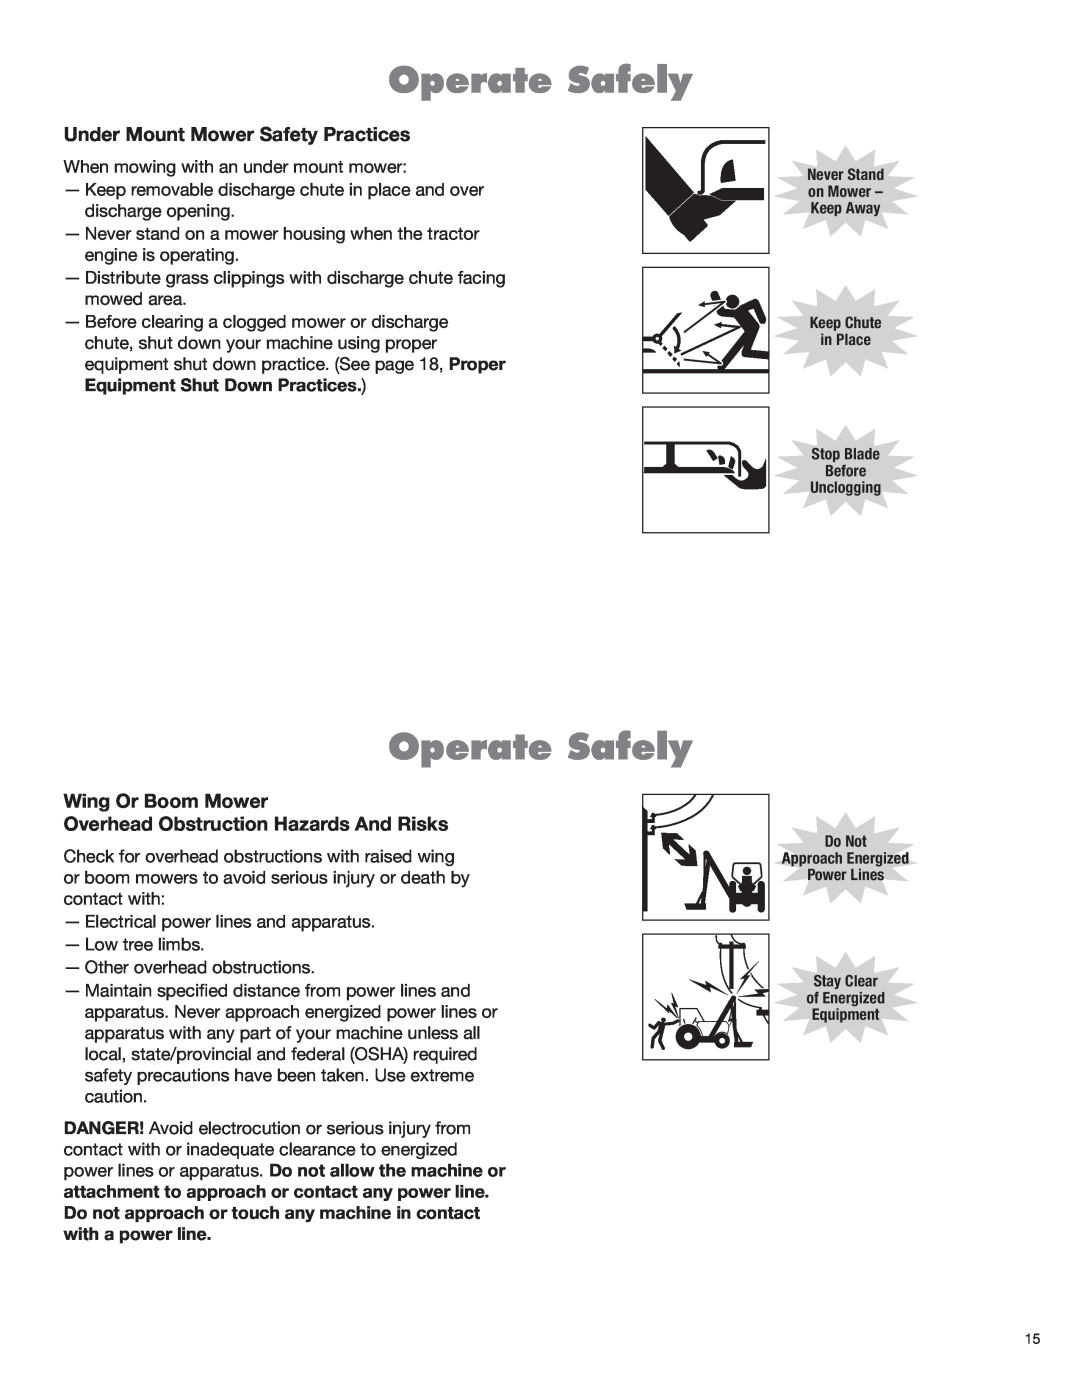 Rhino Mounts RHD96, RHD88, RHD74, RHD62 manual Operate Safely, Under Mount Mower Safety Practices 